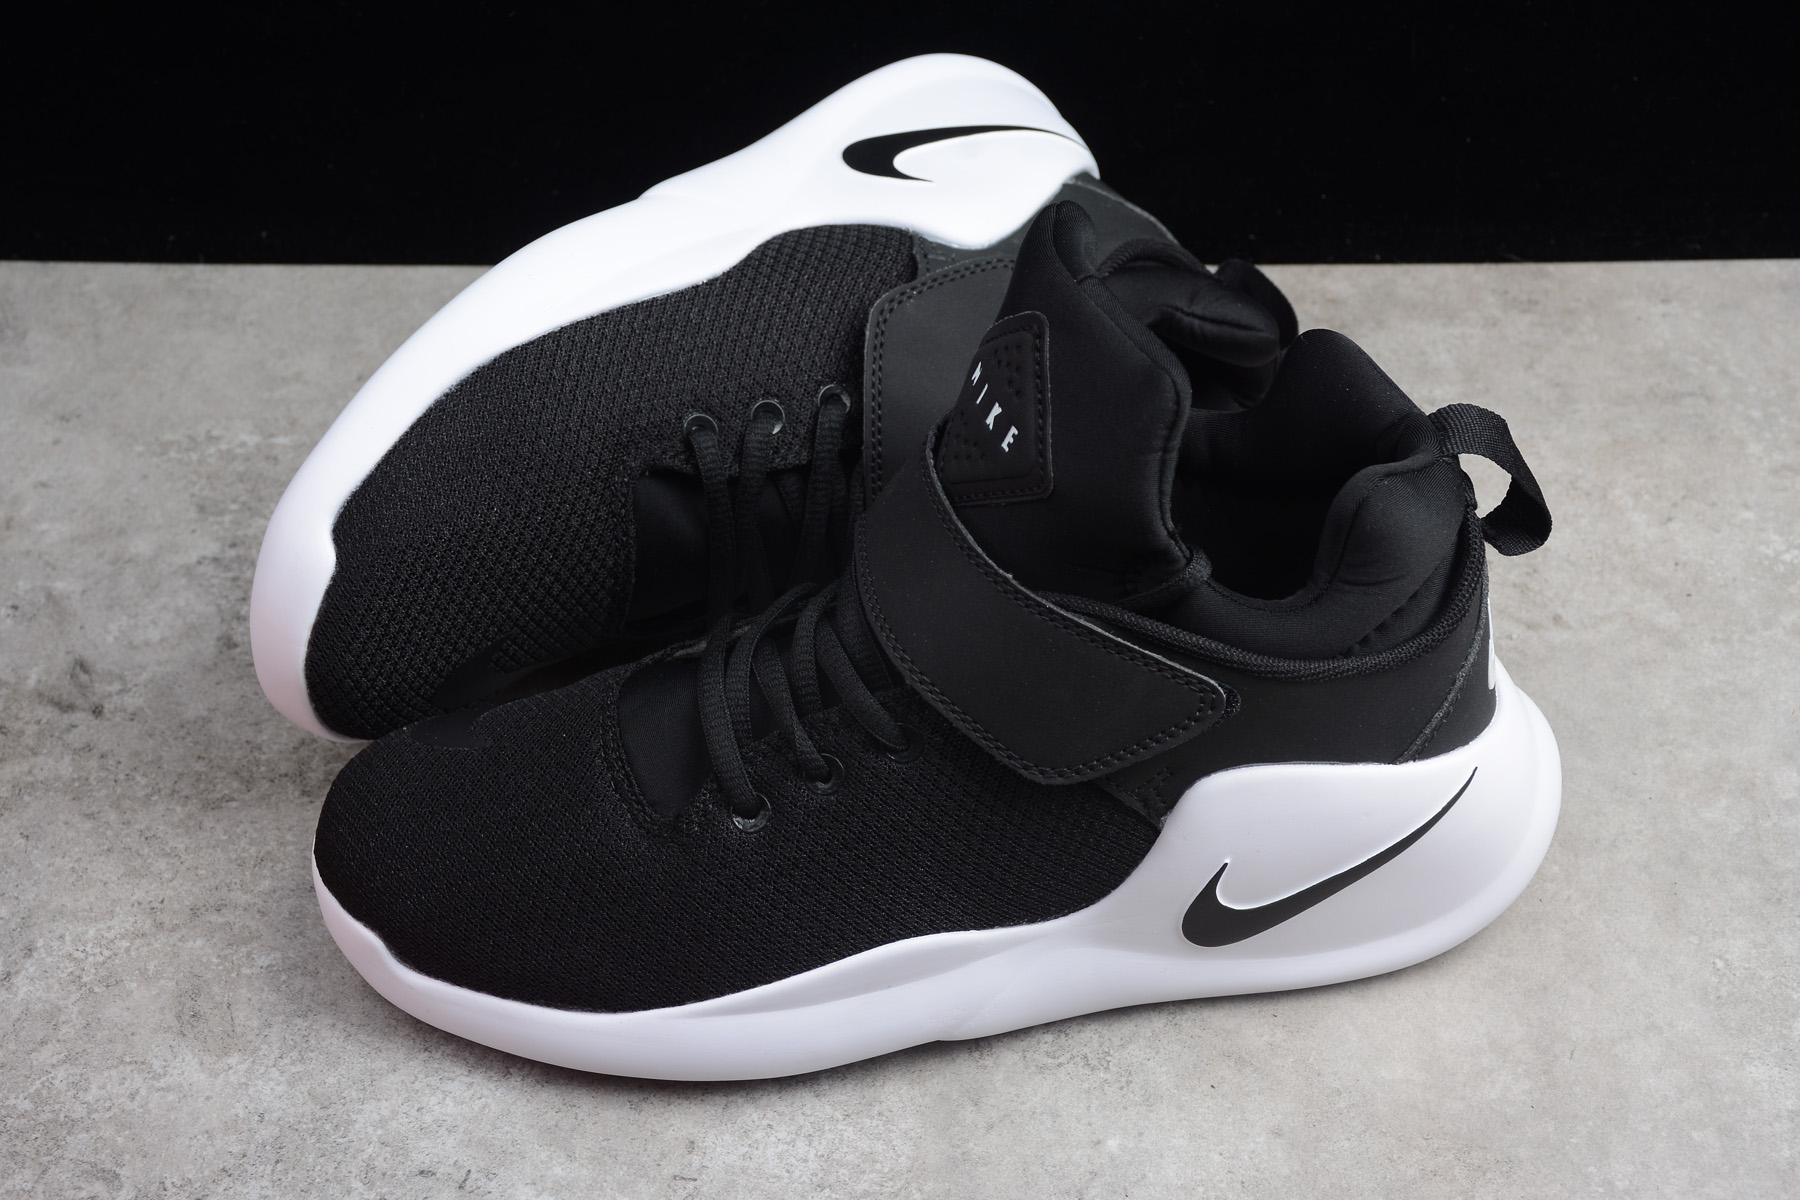 Buy Nike Kwazi Black/Black-White Basketball Shoes 844839-002